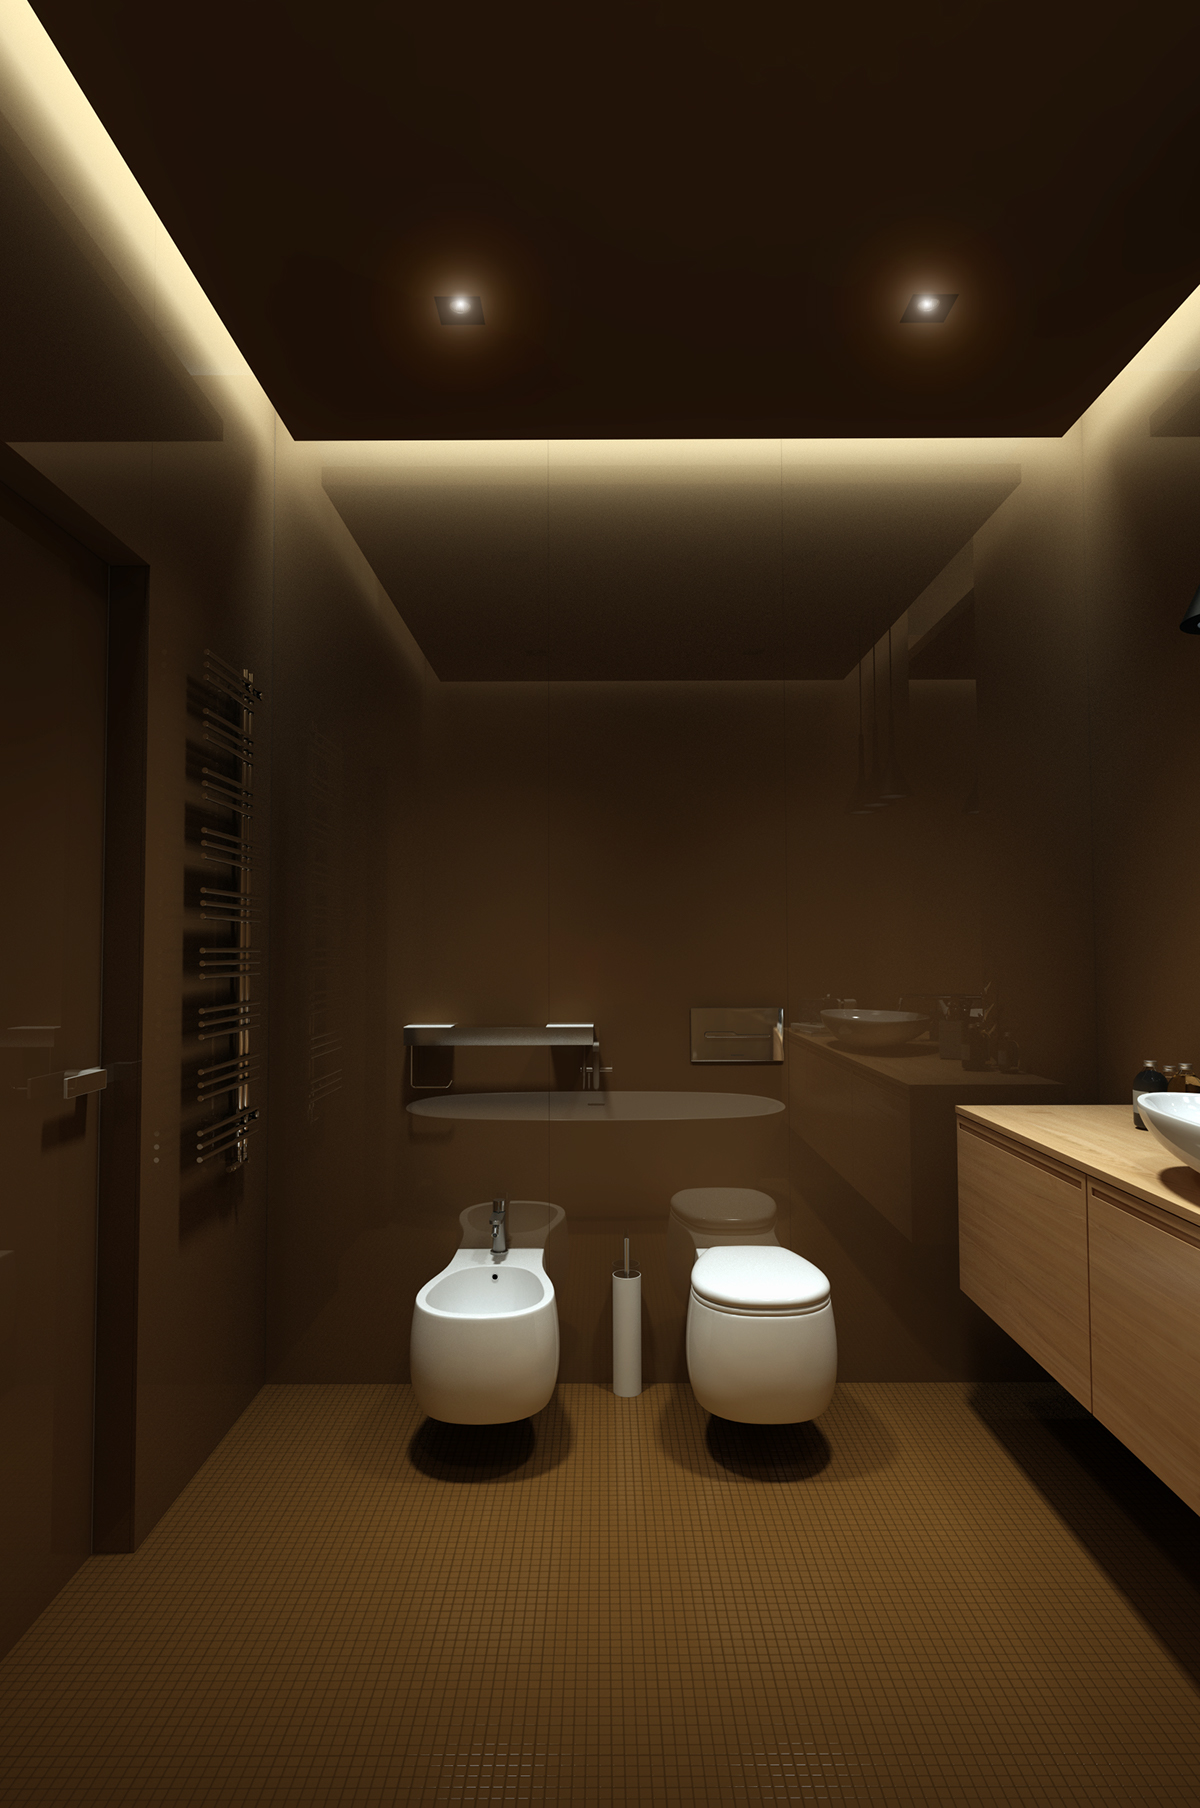 Освещение в ванной комнате: с натяжным потолком, количество и расположение ламп